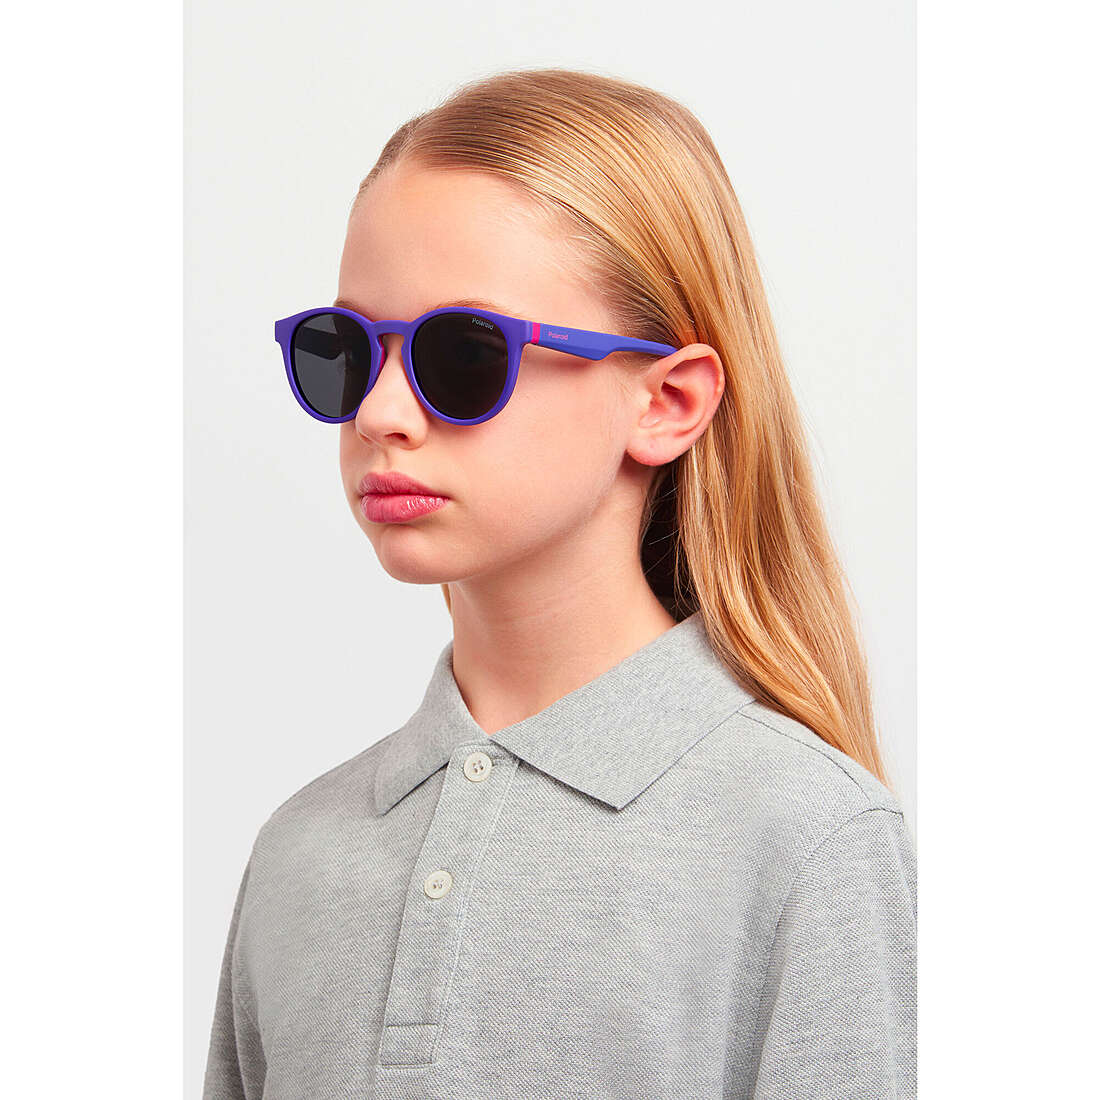 Polaroid occhiali da sole Kids bambino 20487284845M9 indosso